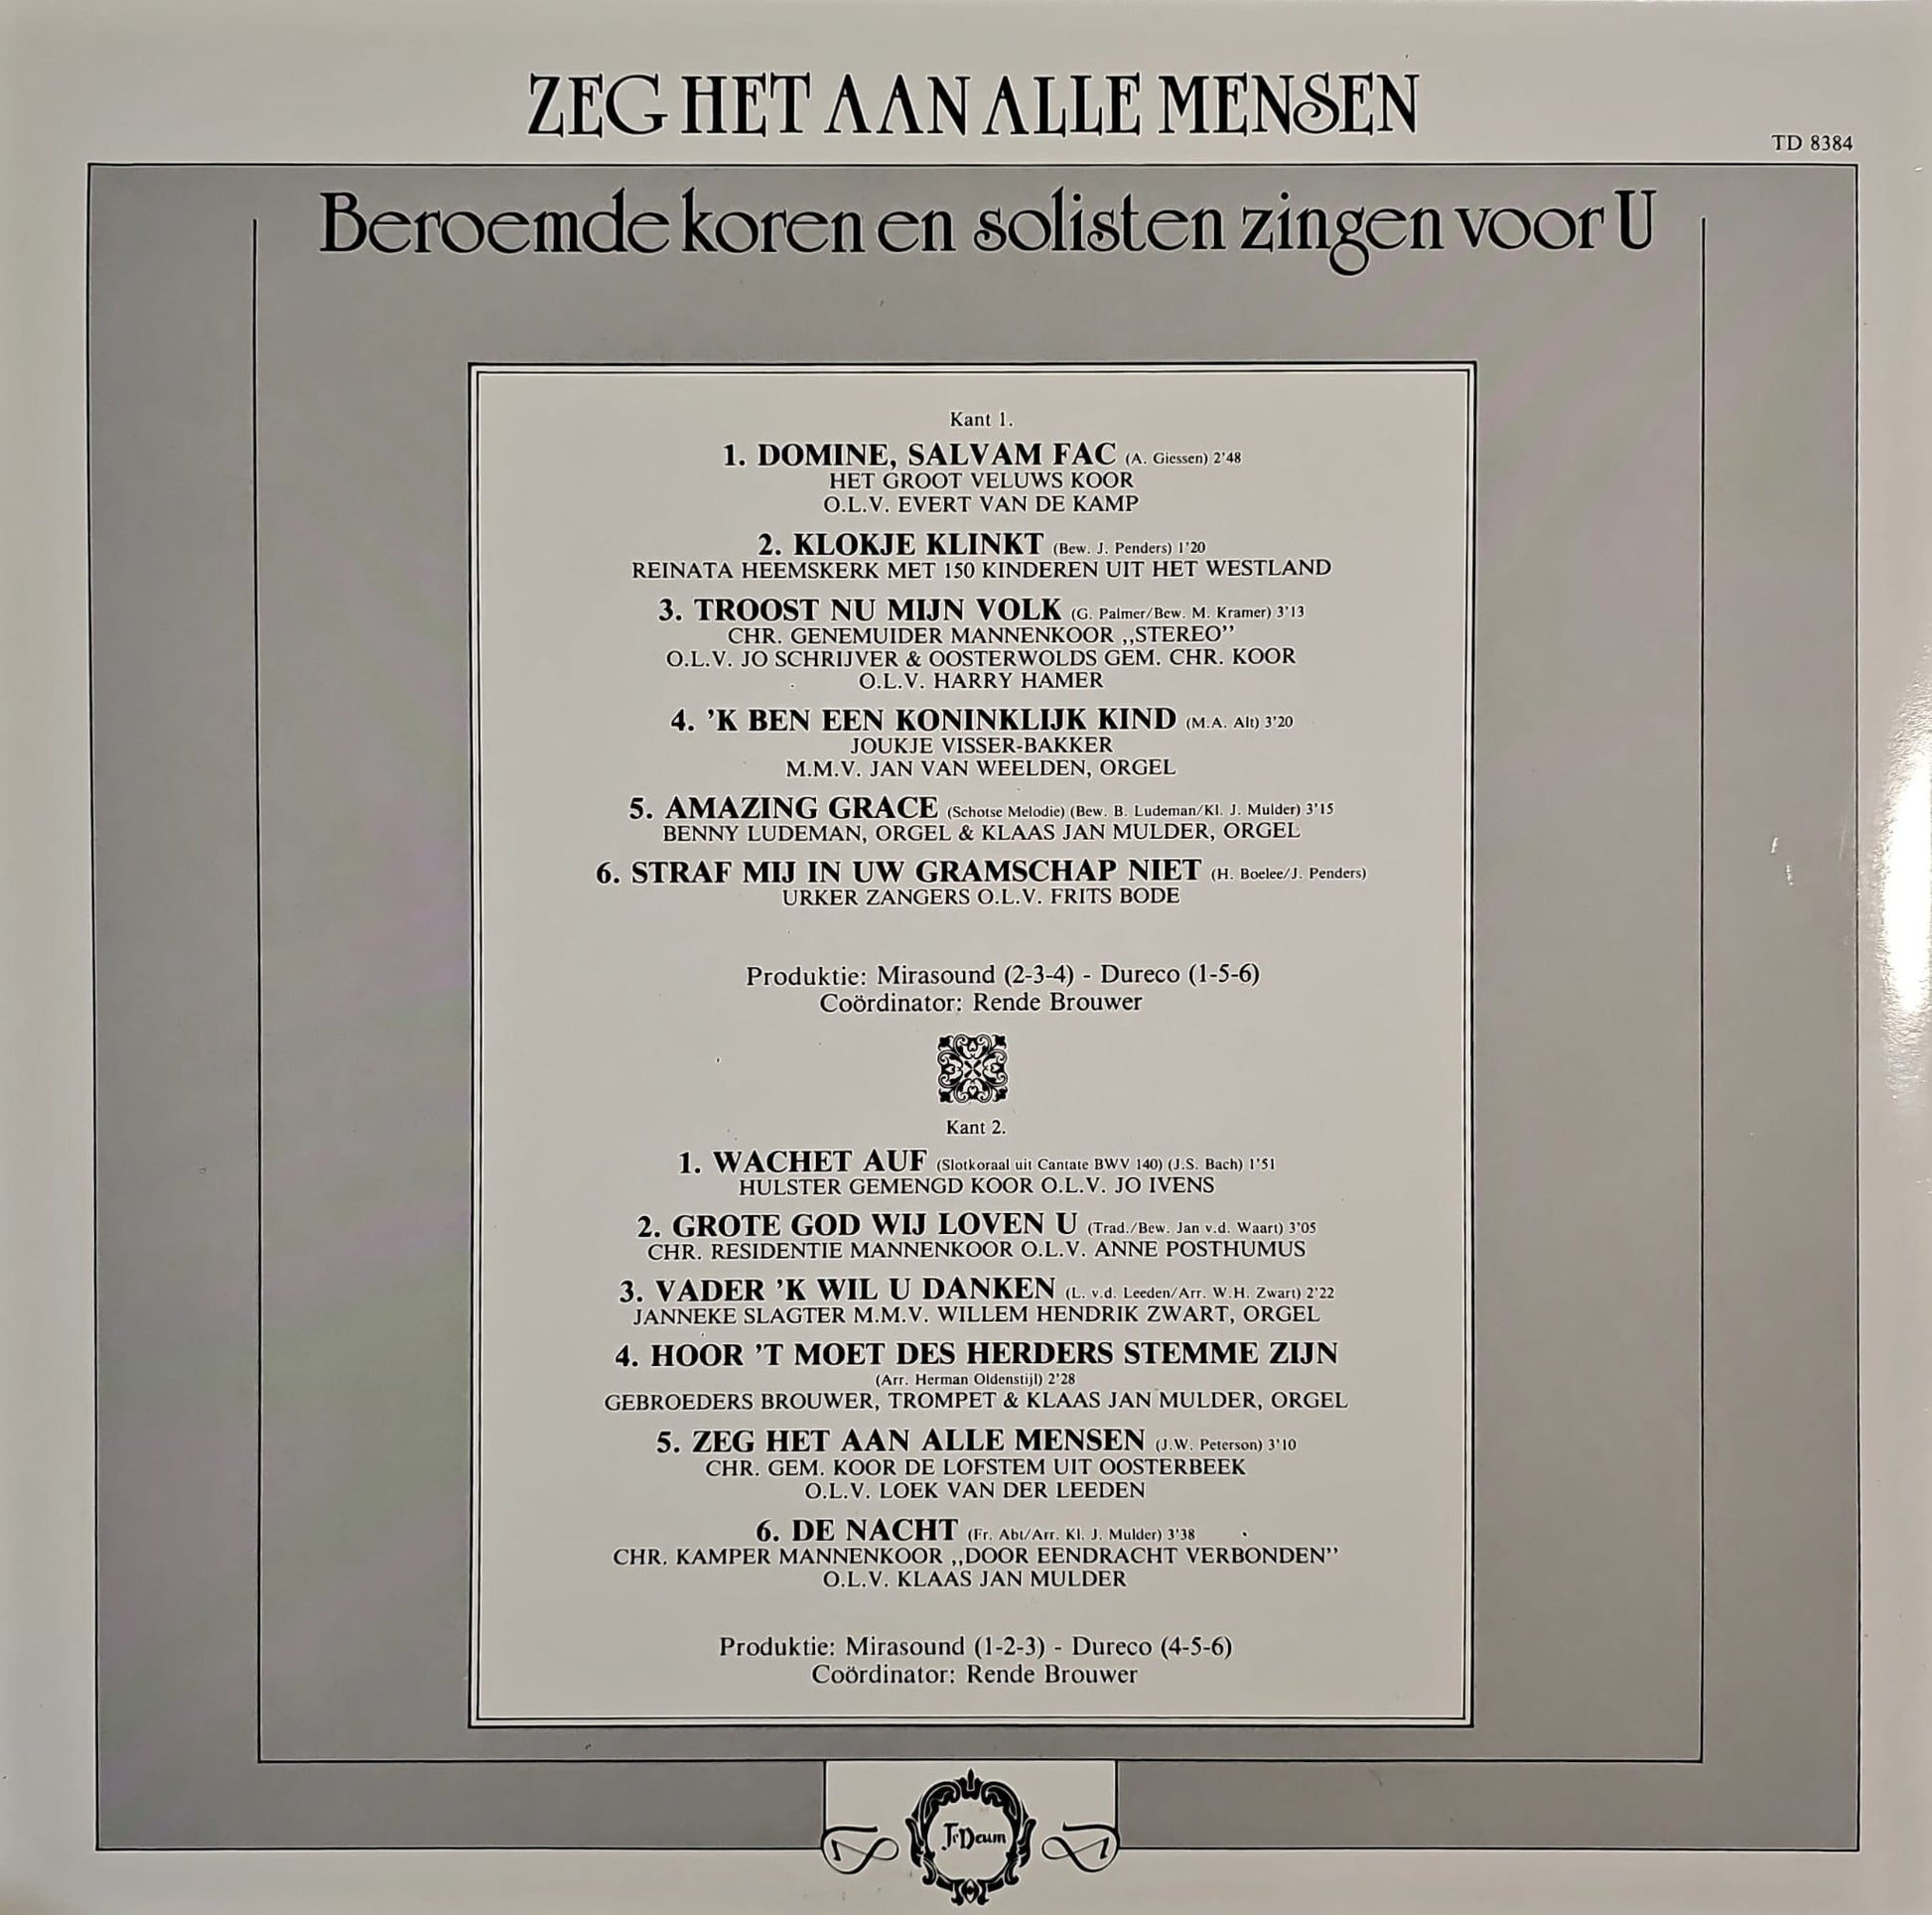 Beroemde Koren - Zeg Het Aan Alle Mensen (LP) 50749 Vinyl LP Dubbel VINYLSINGLES.NL